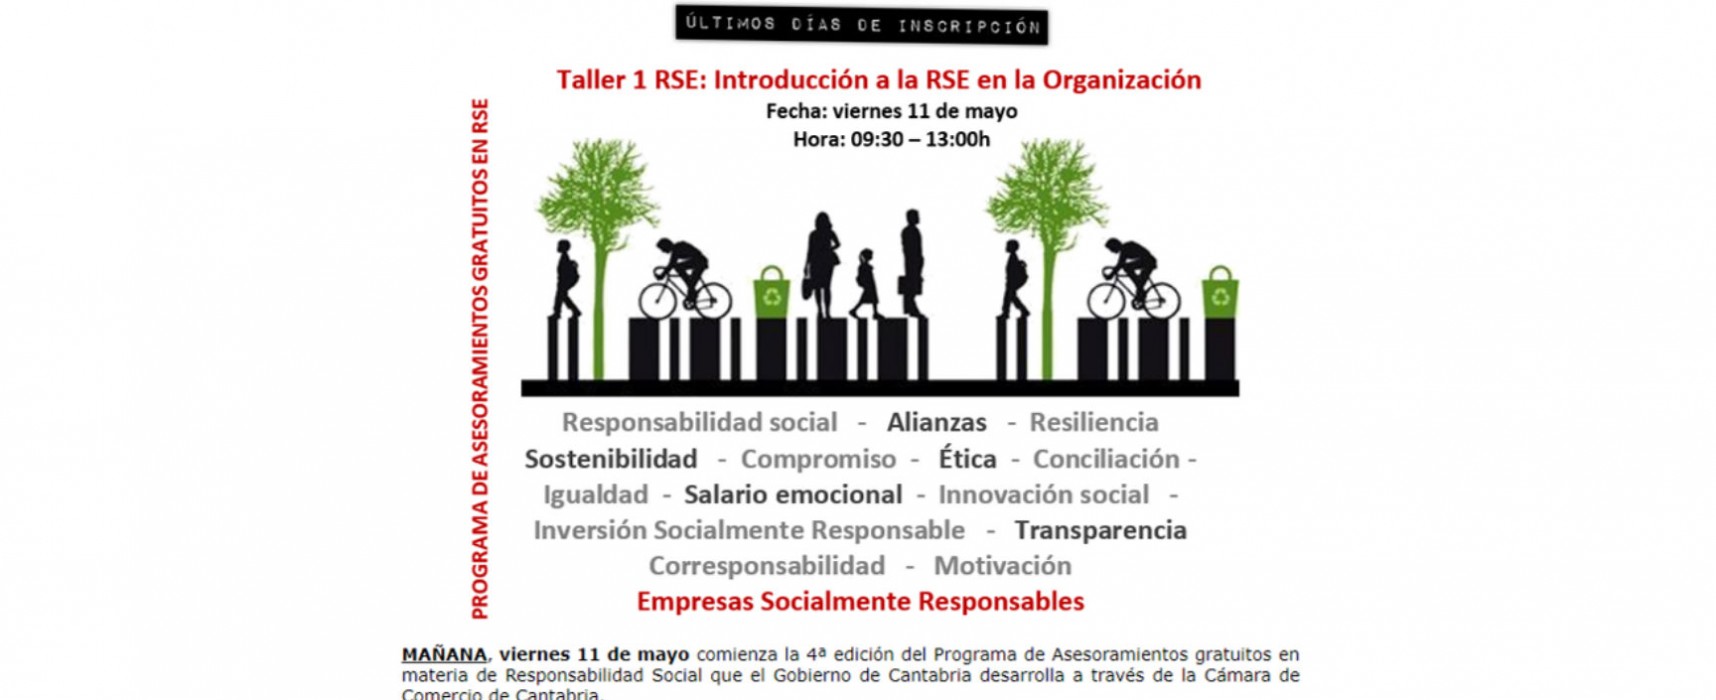 Taller: Introducción a la RSE en la organización